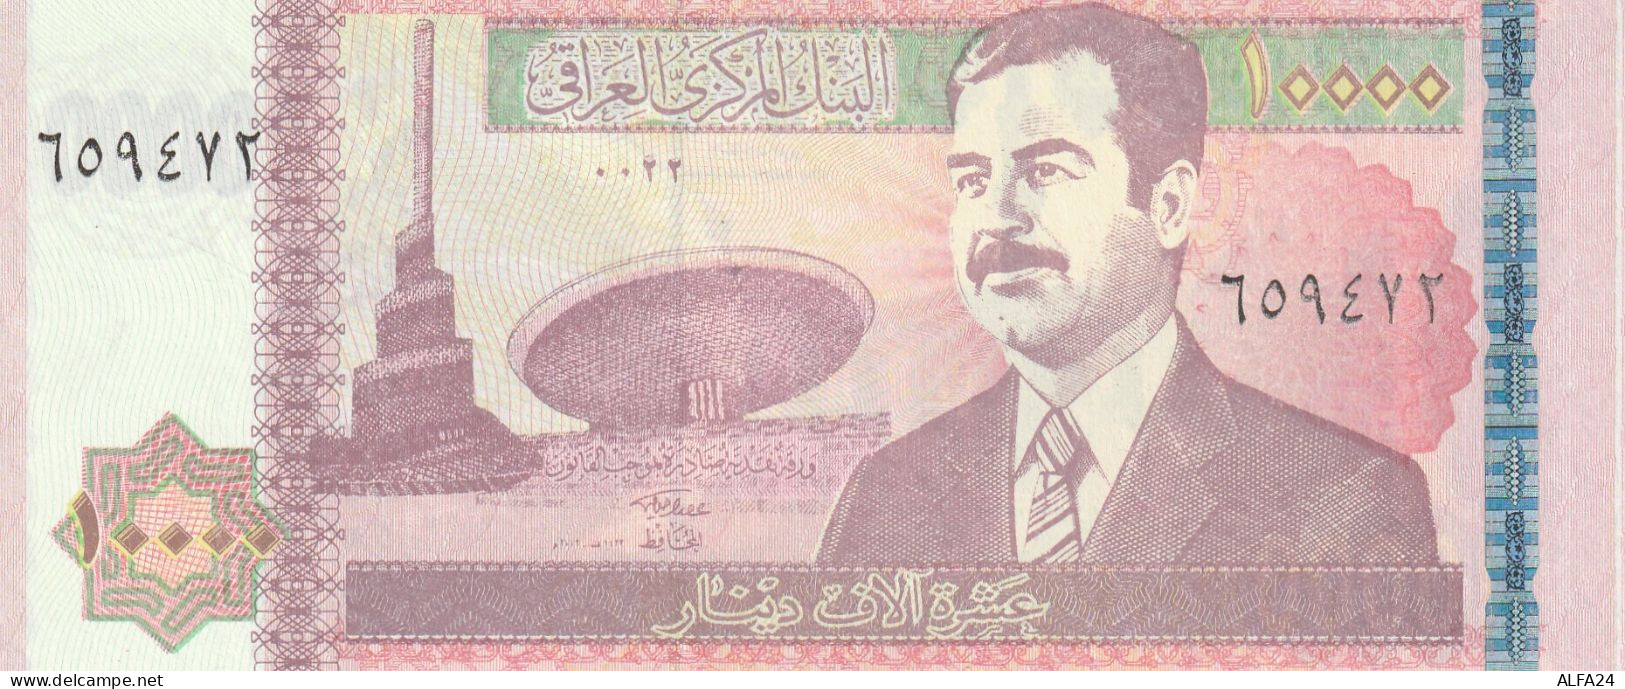 BANCONOTA IRAQ 10000 UNC  (B_566 - Irak